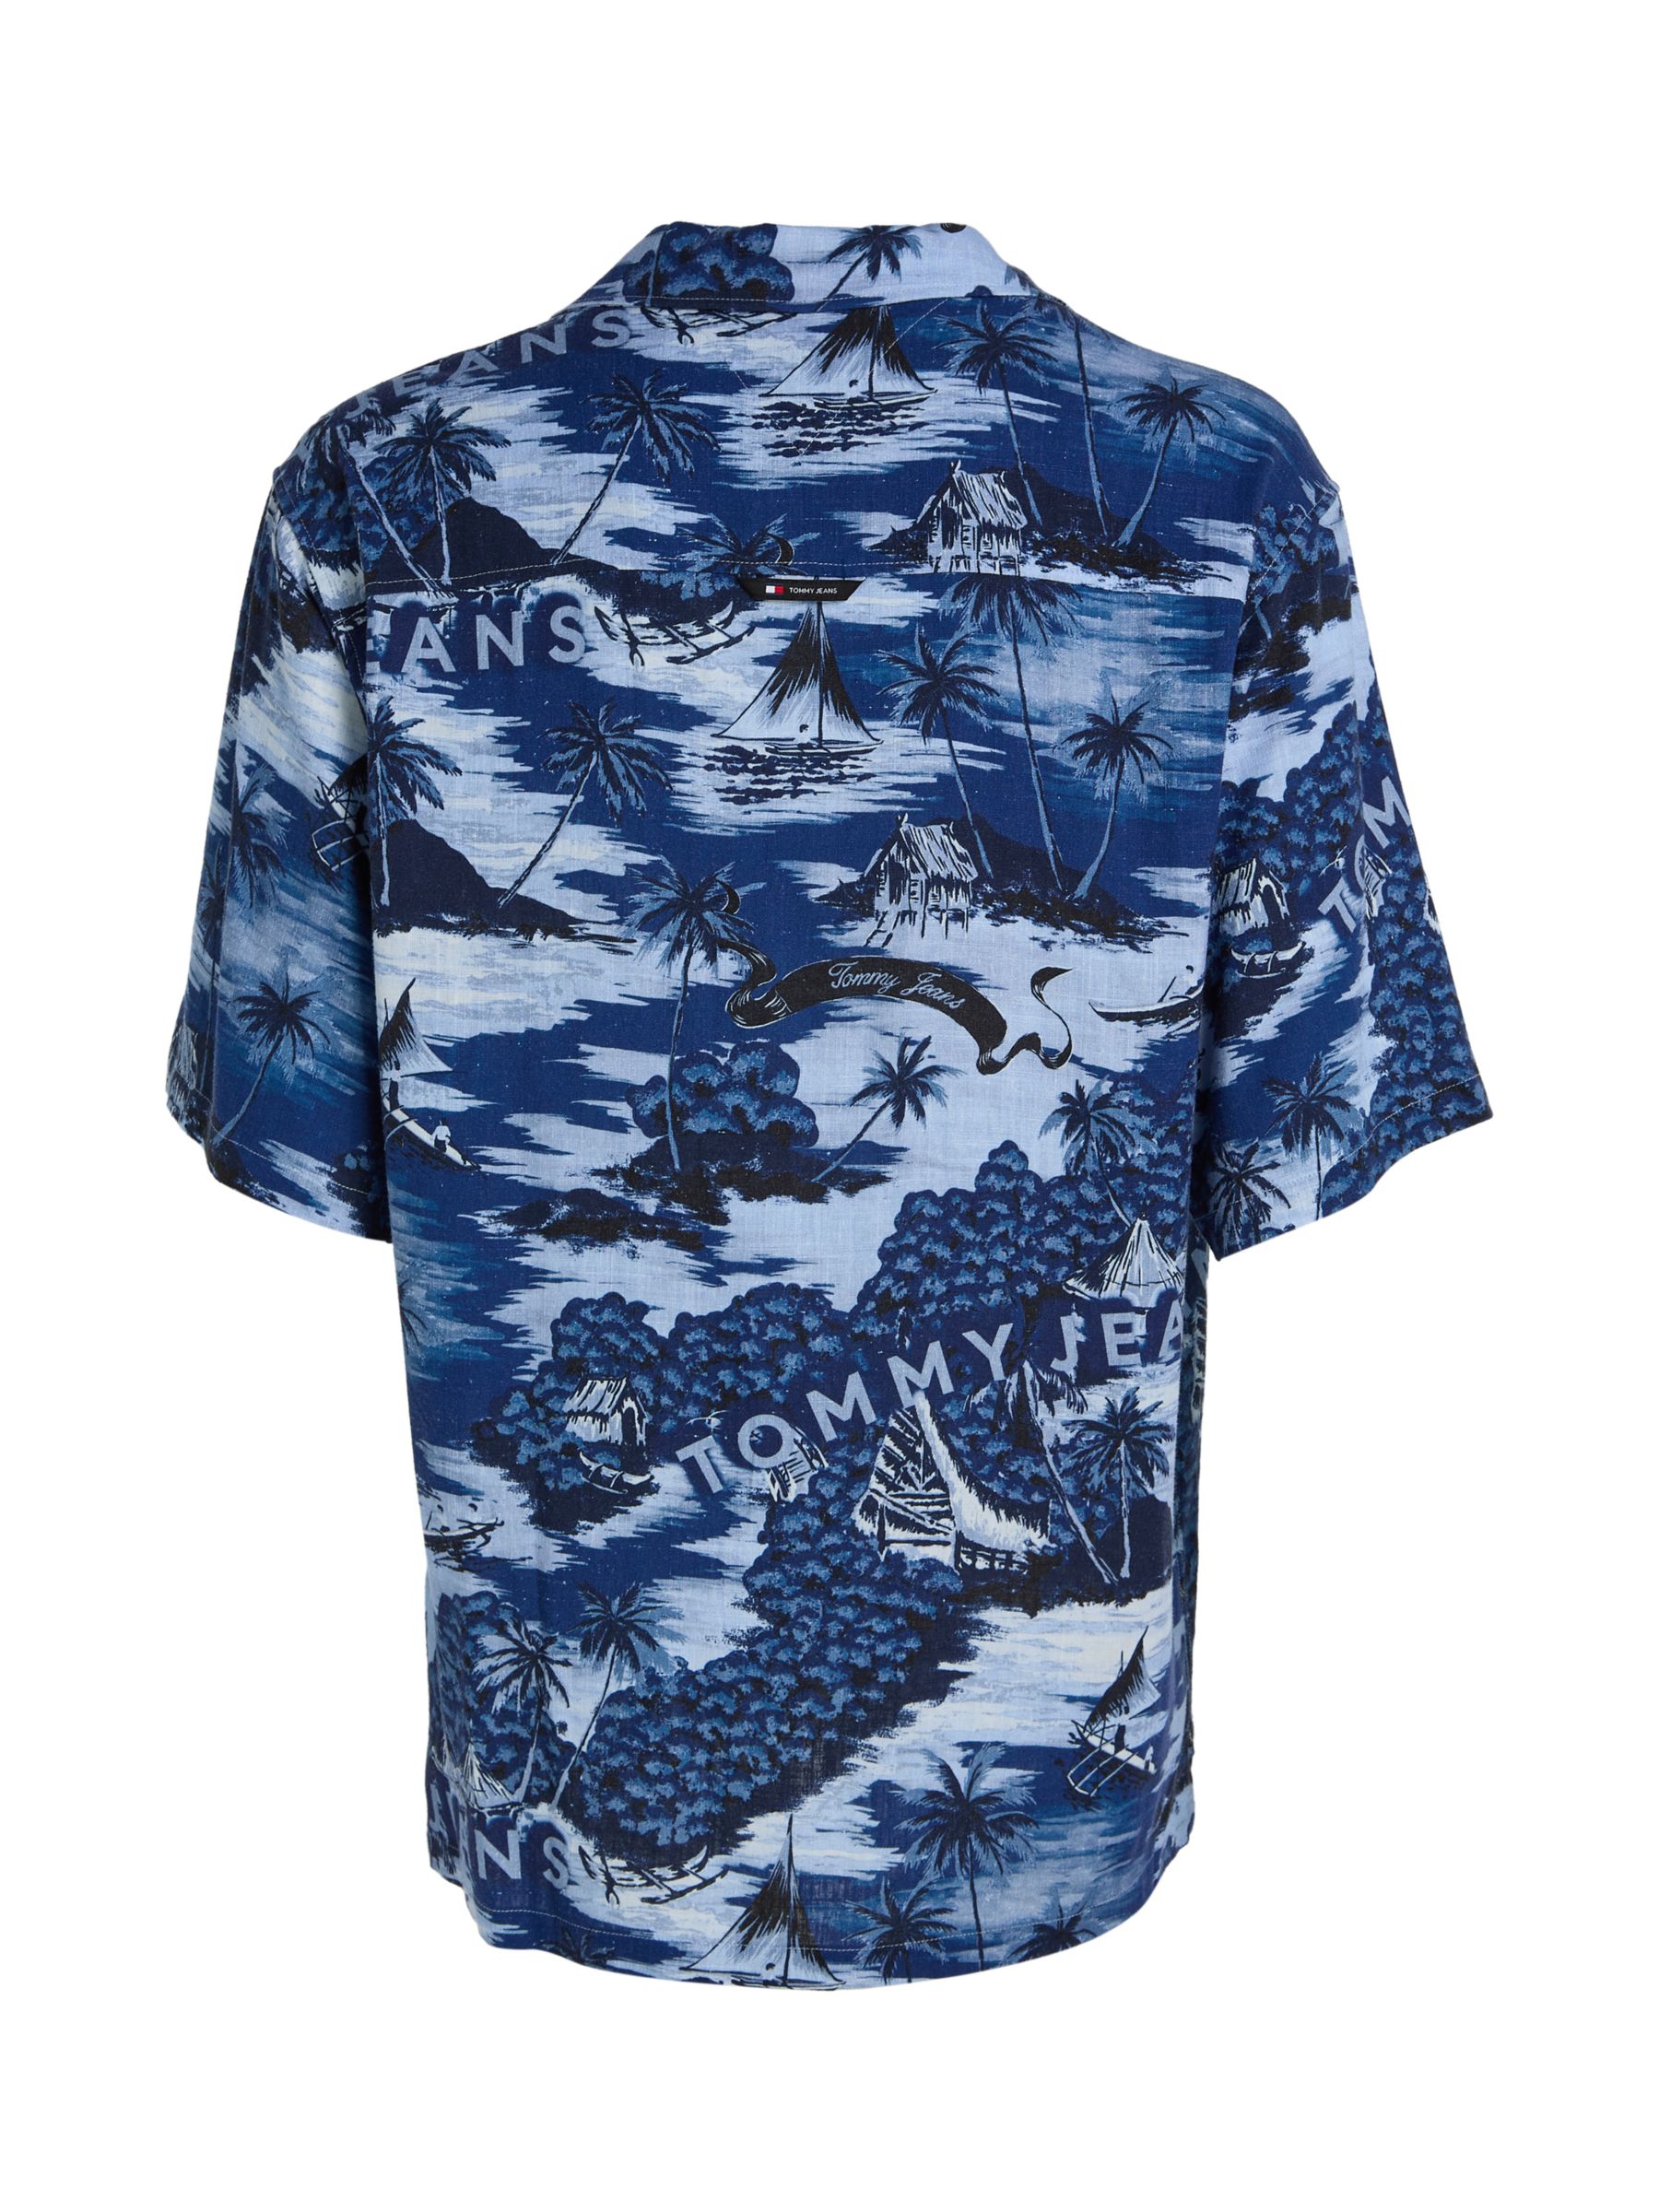 Tommy Jeans Hawaiian Print Camp Shirt, Blue/Multi, L